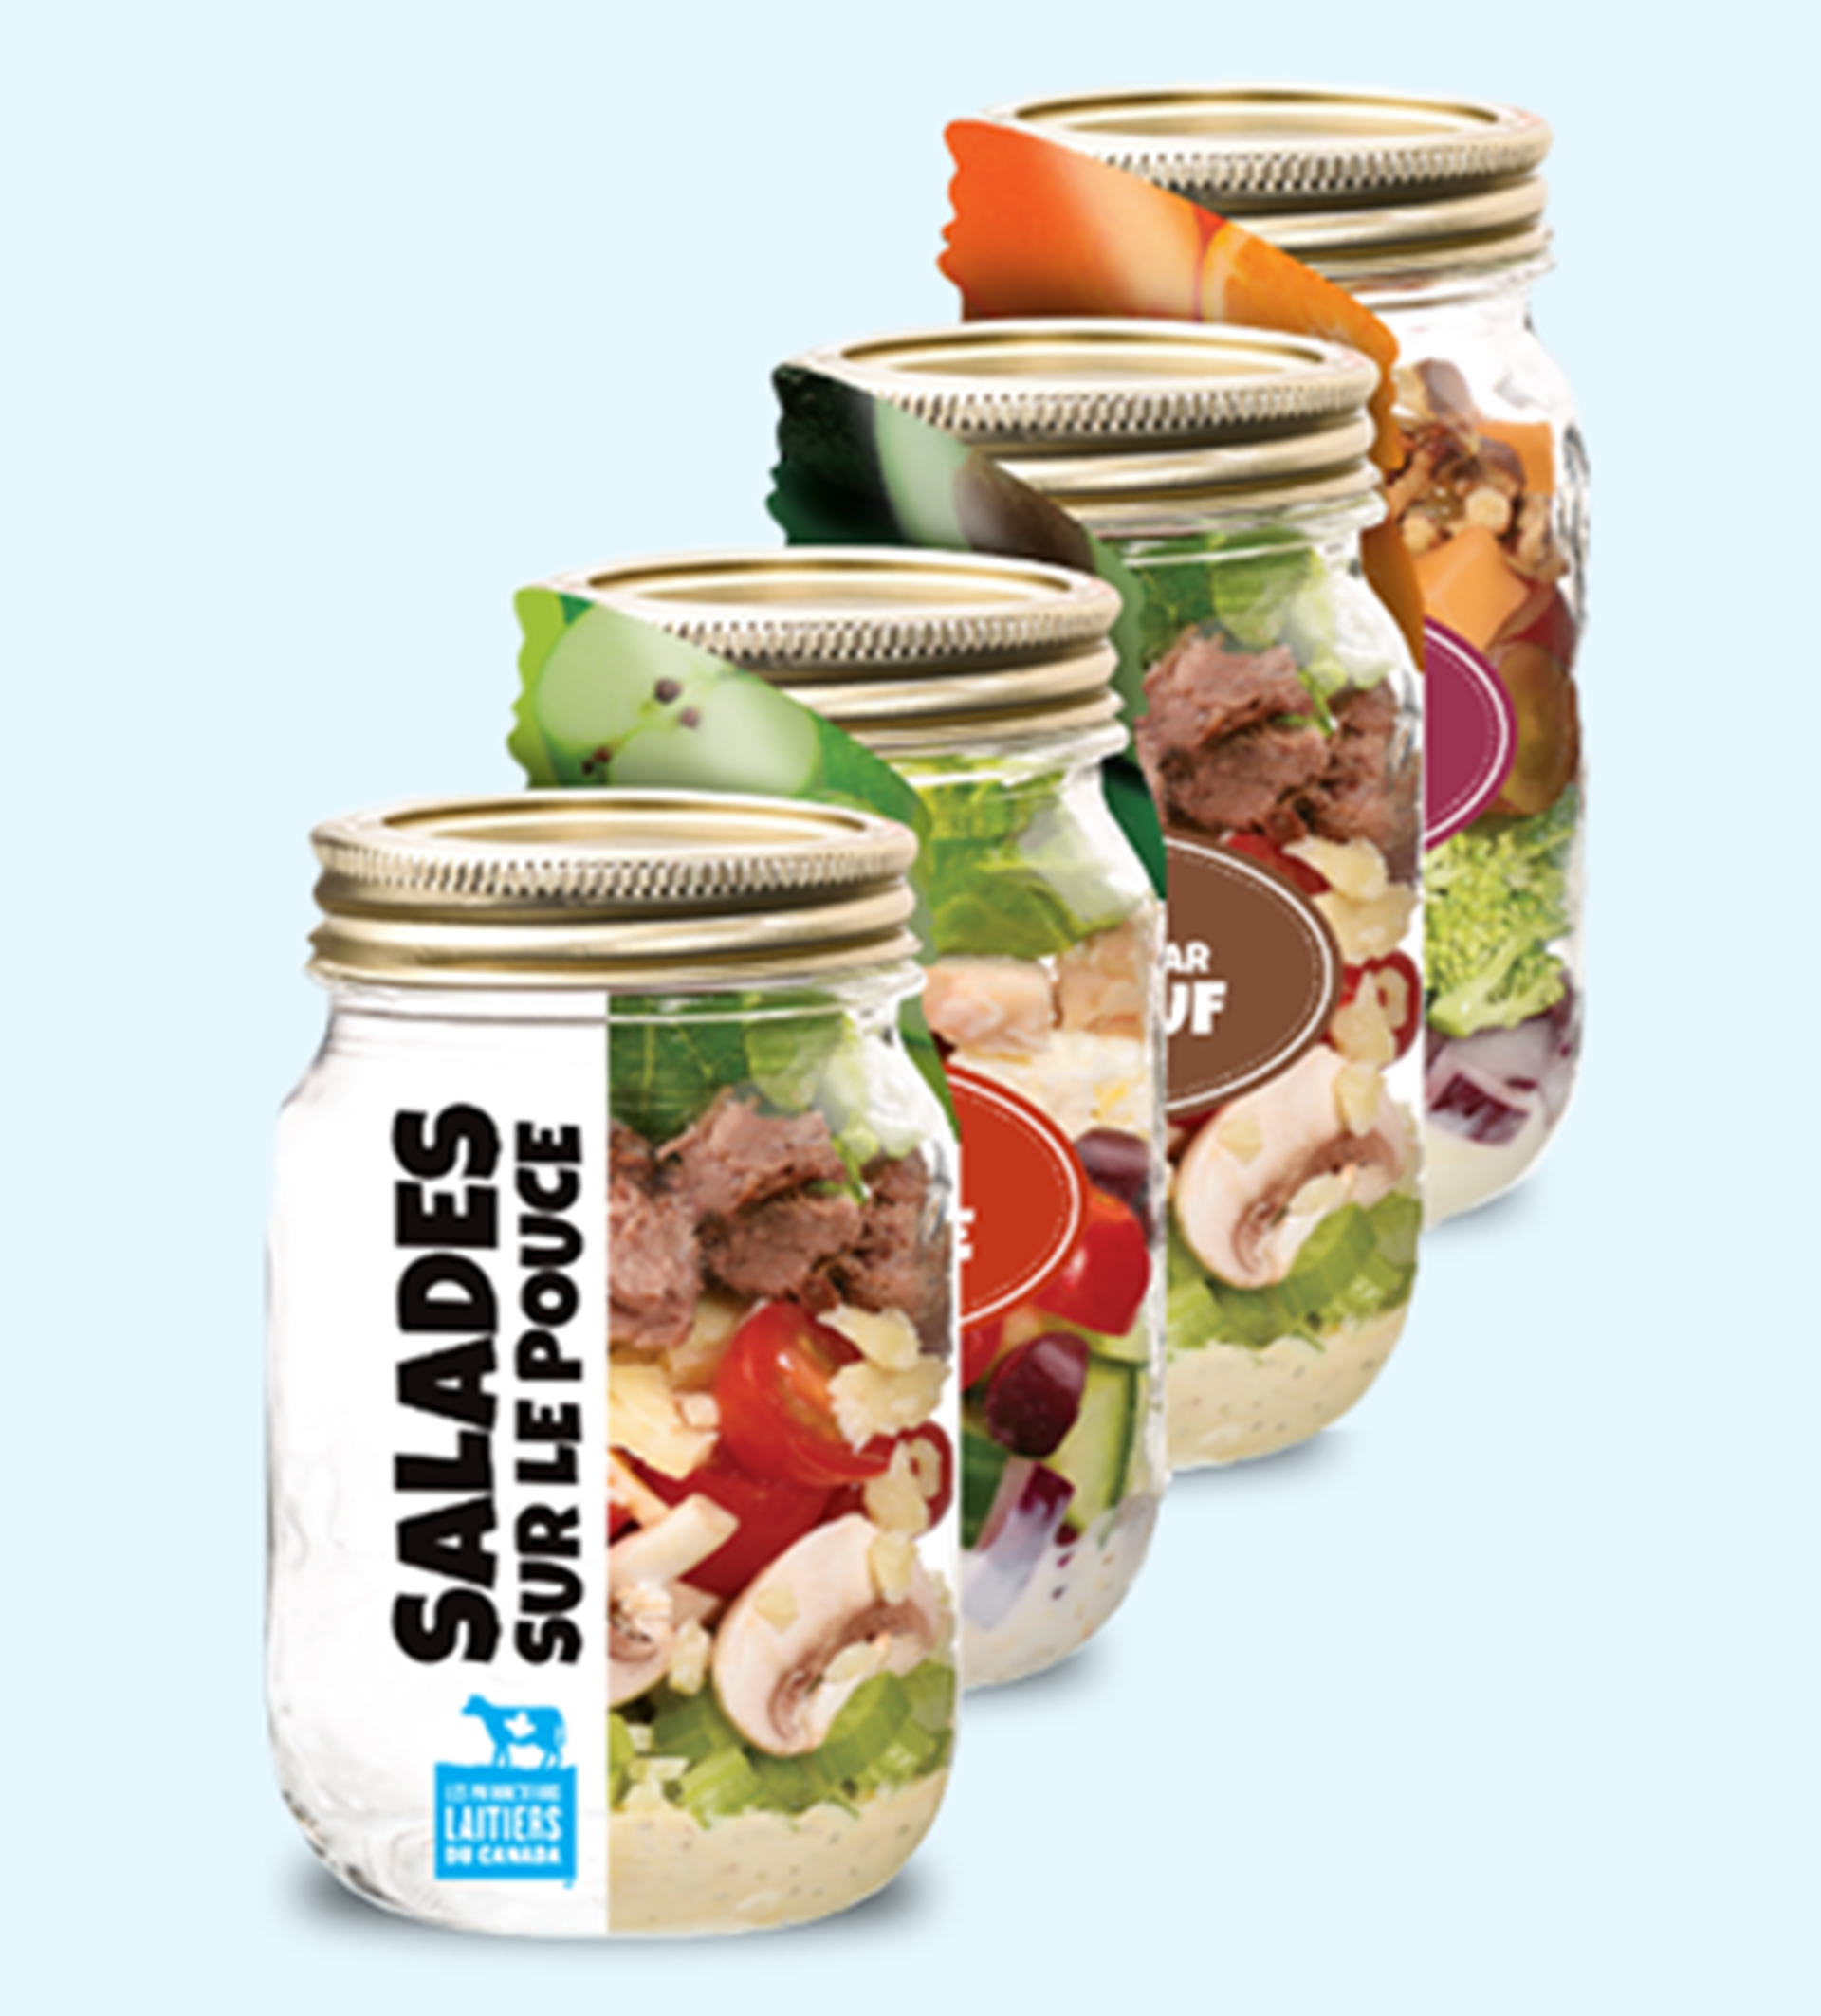 Brochure avec recette de repas en pots : salades sur le pouce